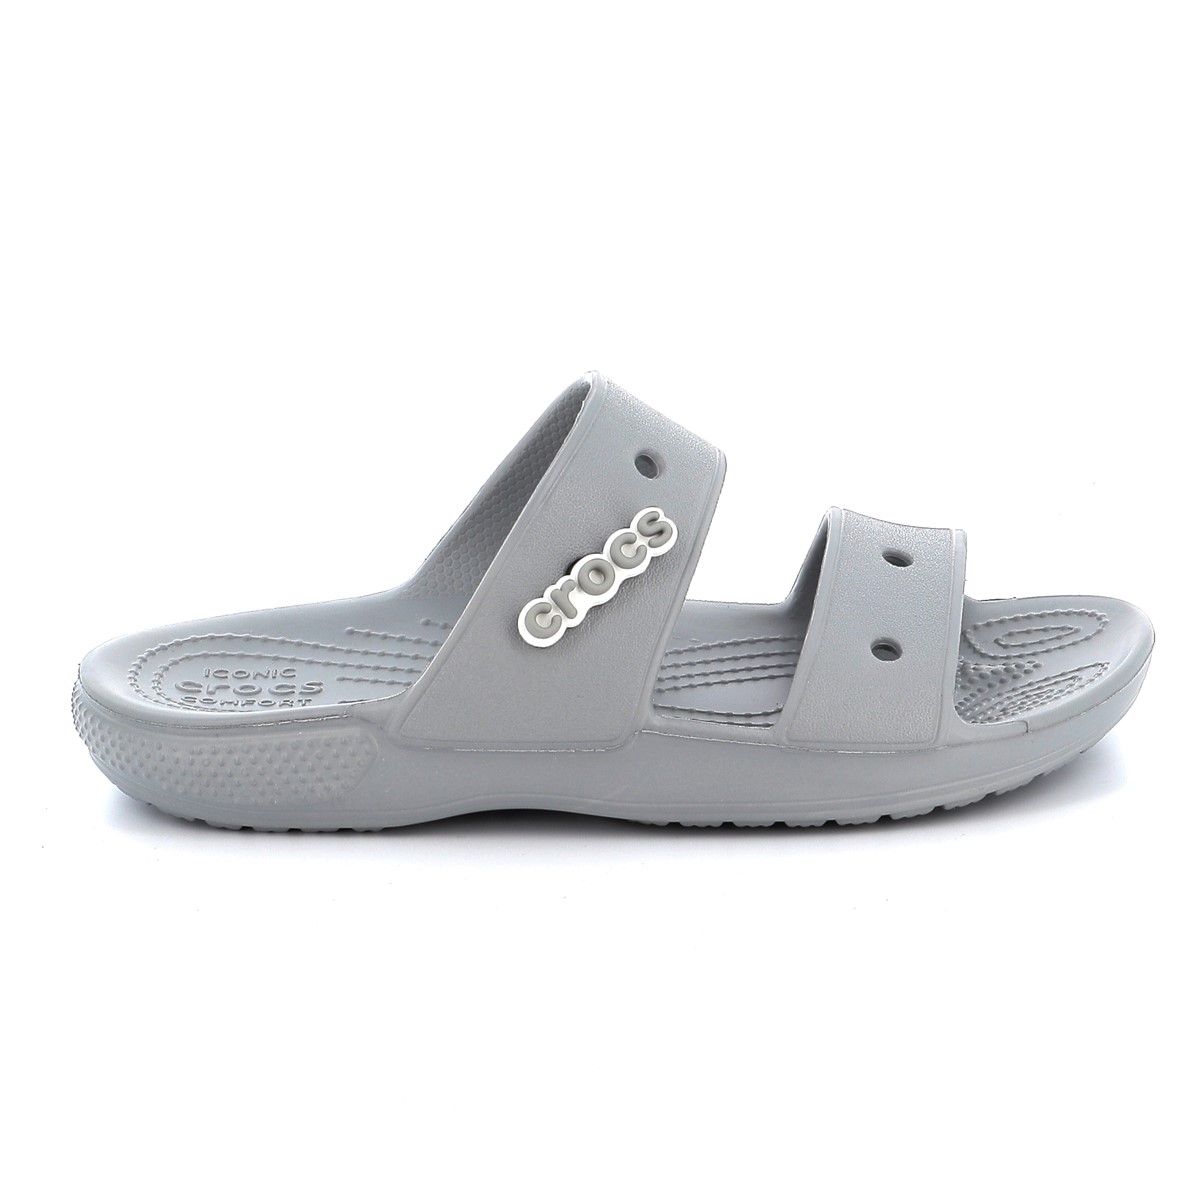 Γυναικεία Σαγιονάρα Crocs Classic Crocs Sandal Χρώματος Γκρι 206761-007